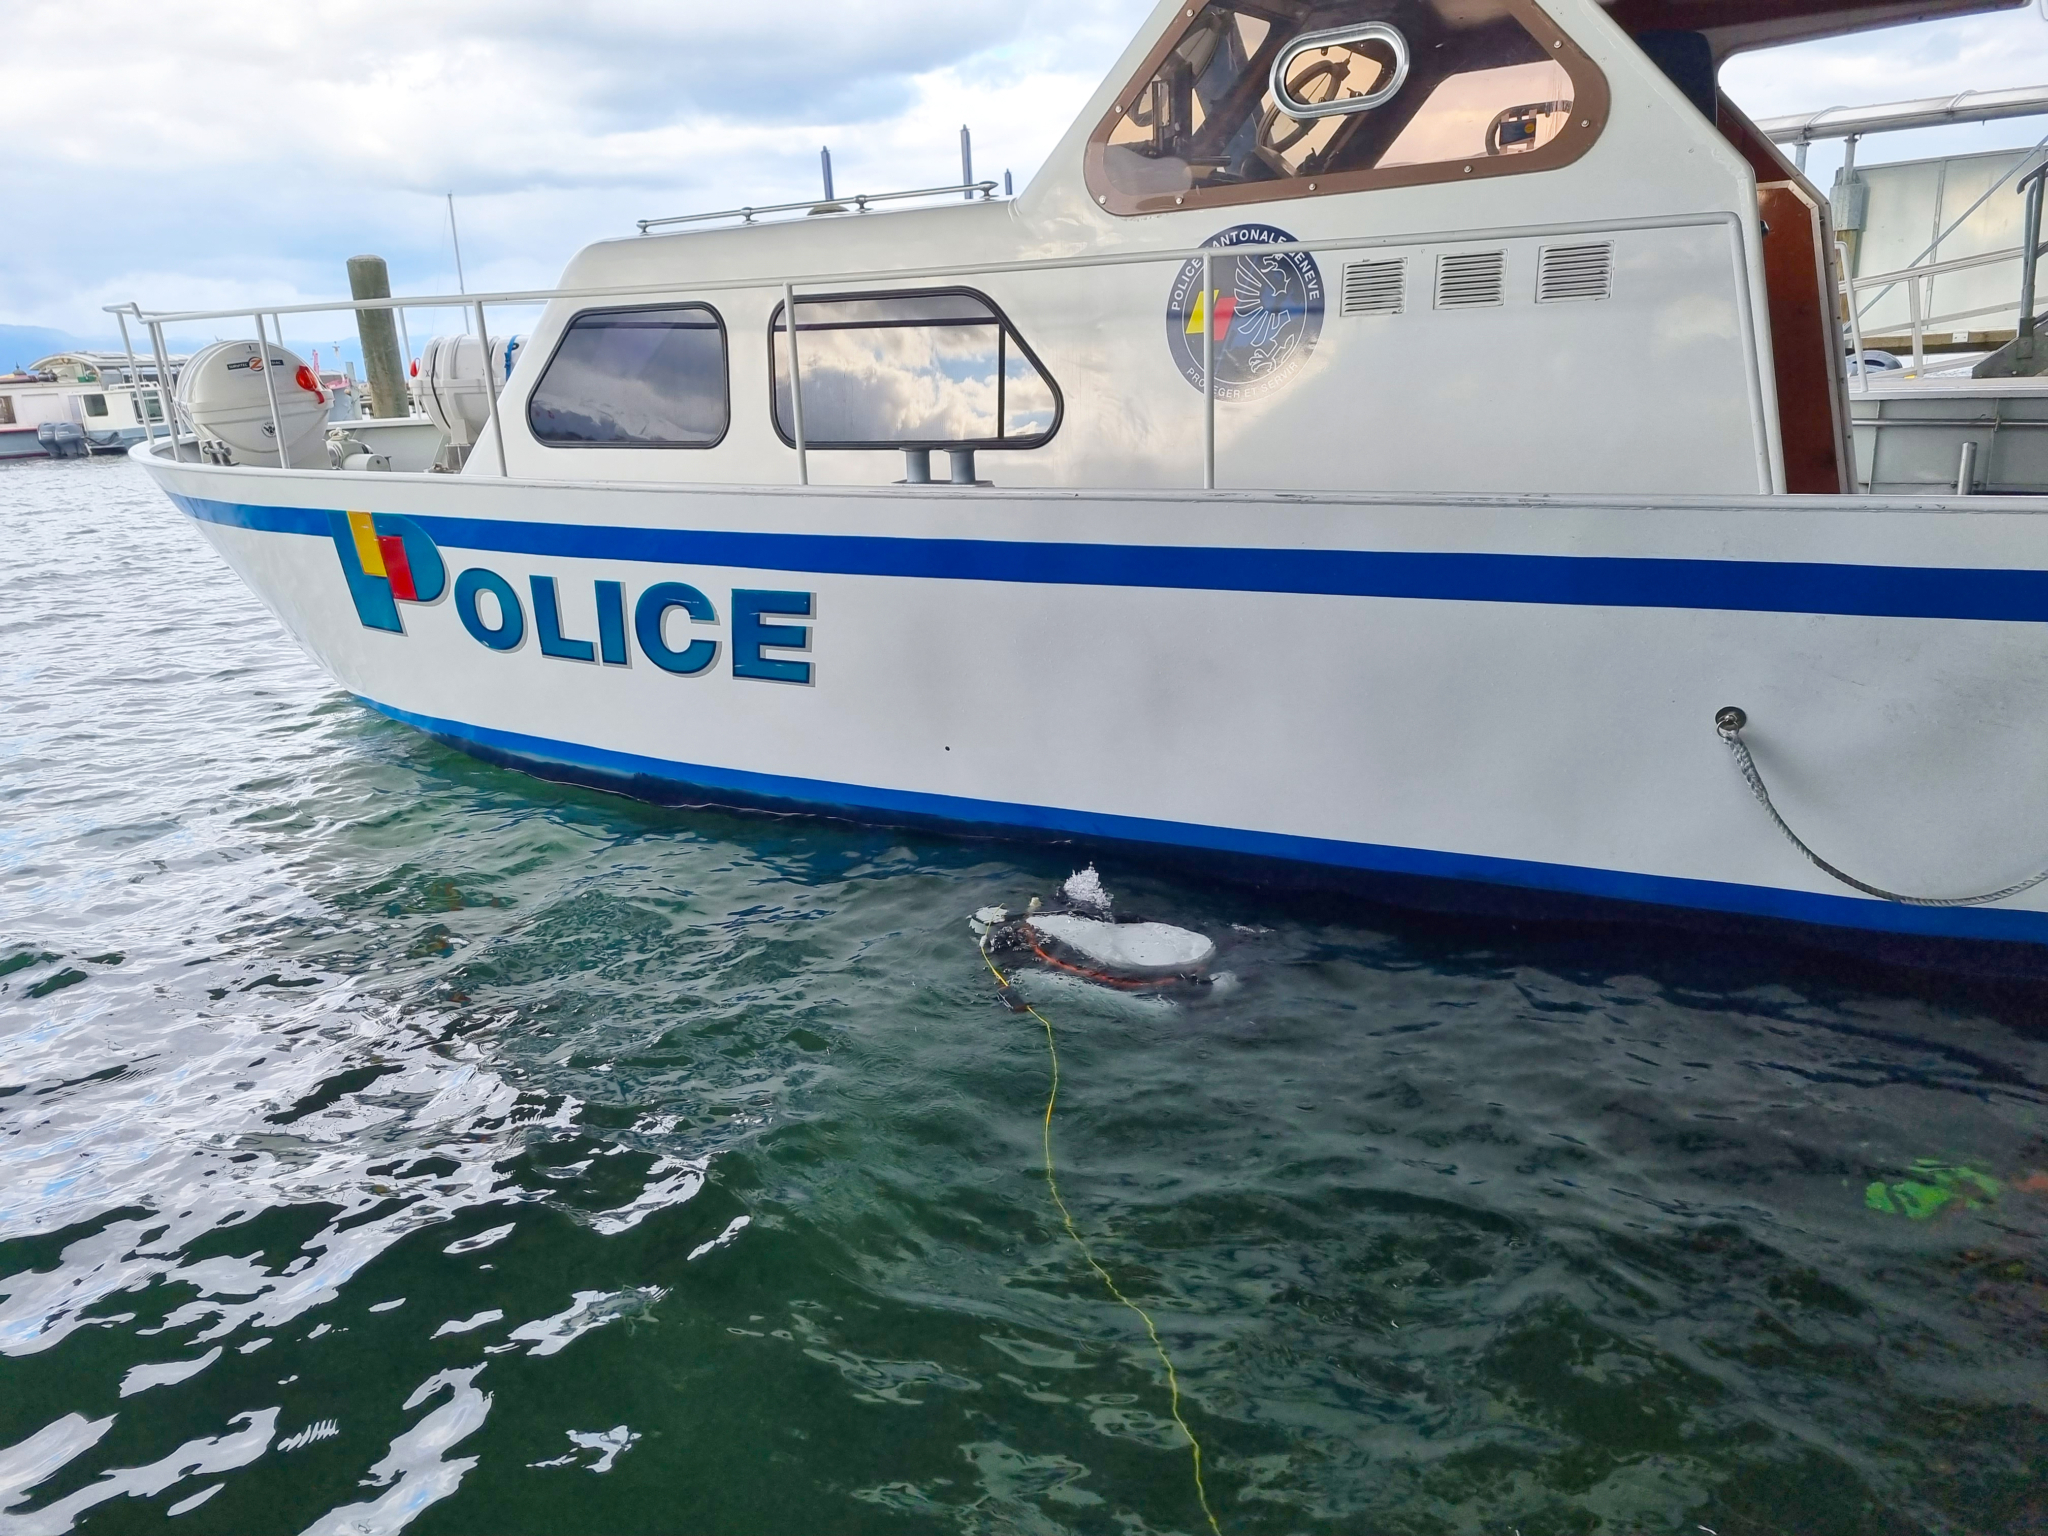 DVL robot besides police boat